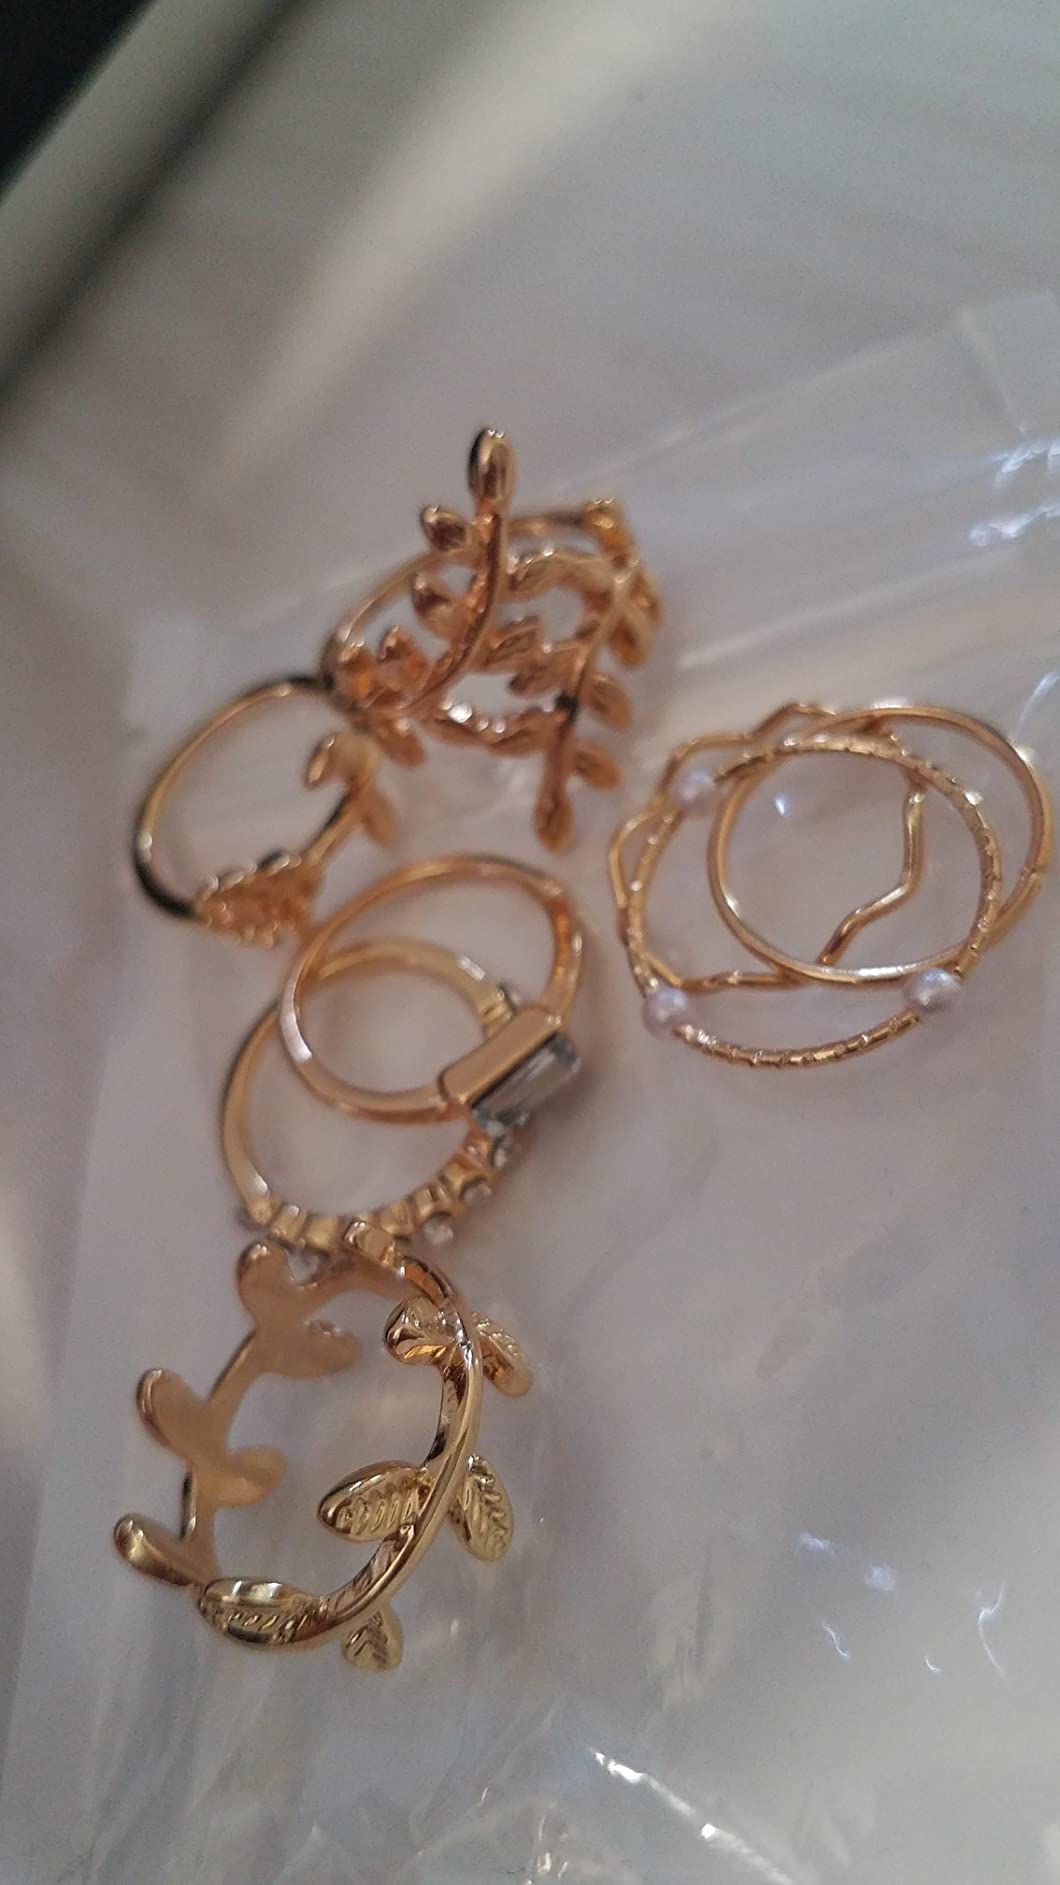 66 Pcs Gold Knuckle Rings Set for Women, Vintage Stackable Rings, Boho Snake Finger Rings, Trendy Midi Rings Pack for Teen Girls A-Gold Ring Set